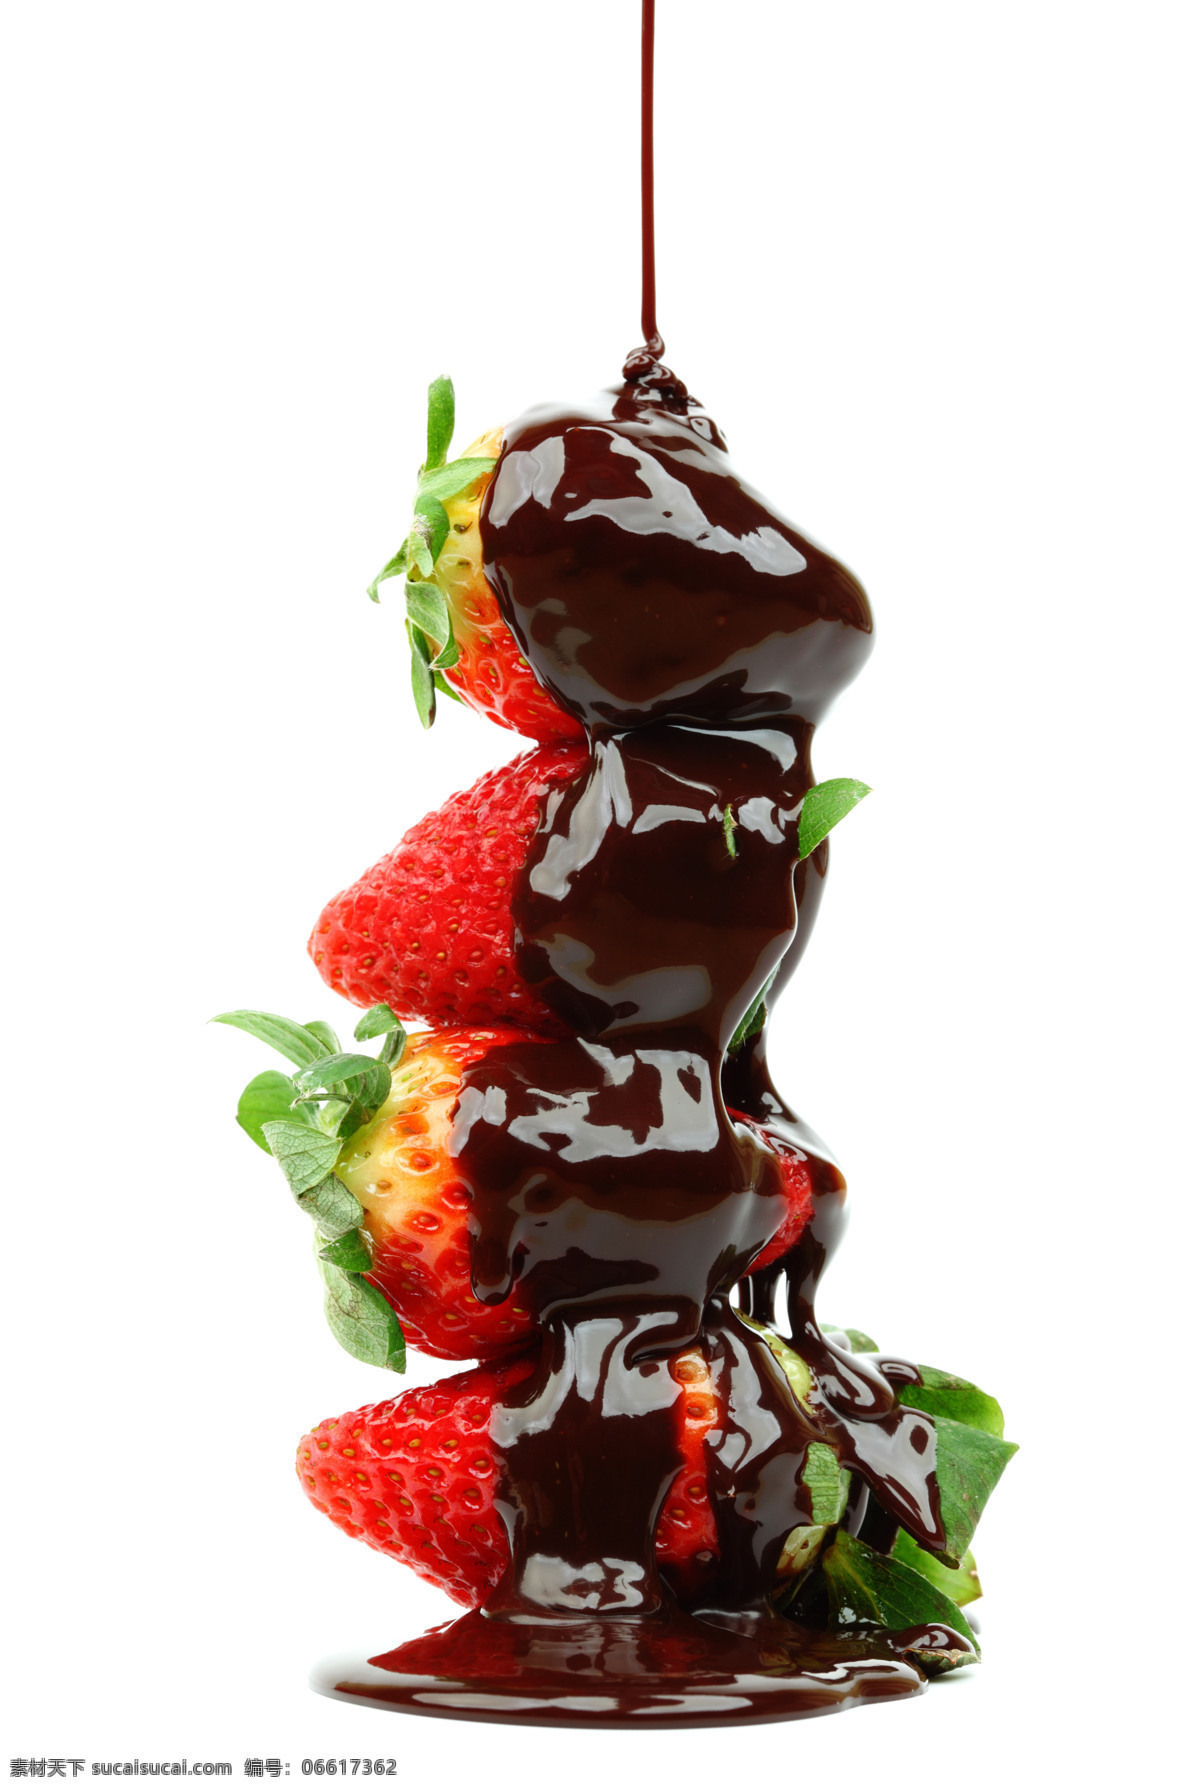 巧克力 酱 草莓 食物 水果 甜品 巧克力酱 诱人 可口 节日庆典 生活百科 白色